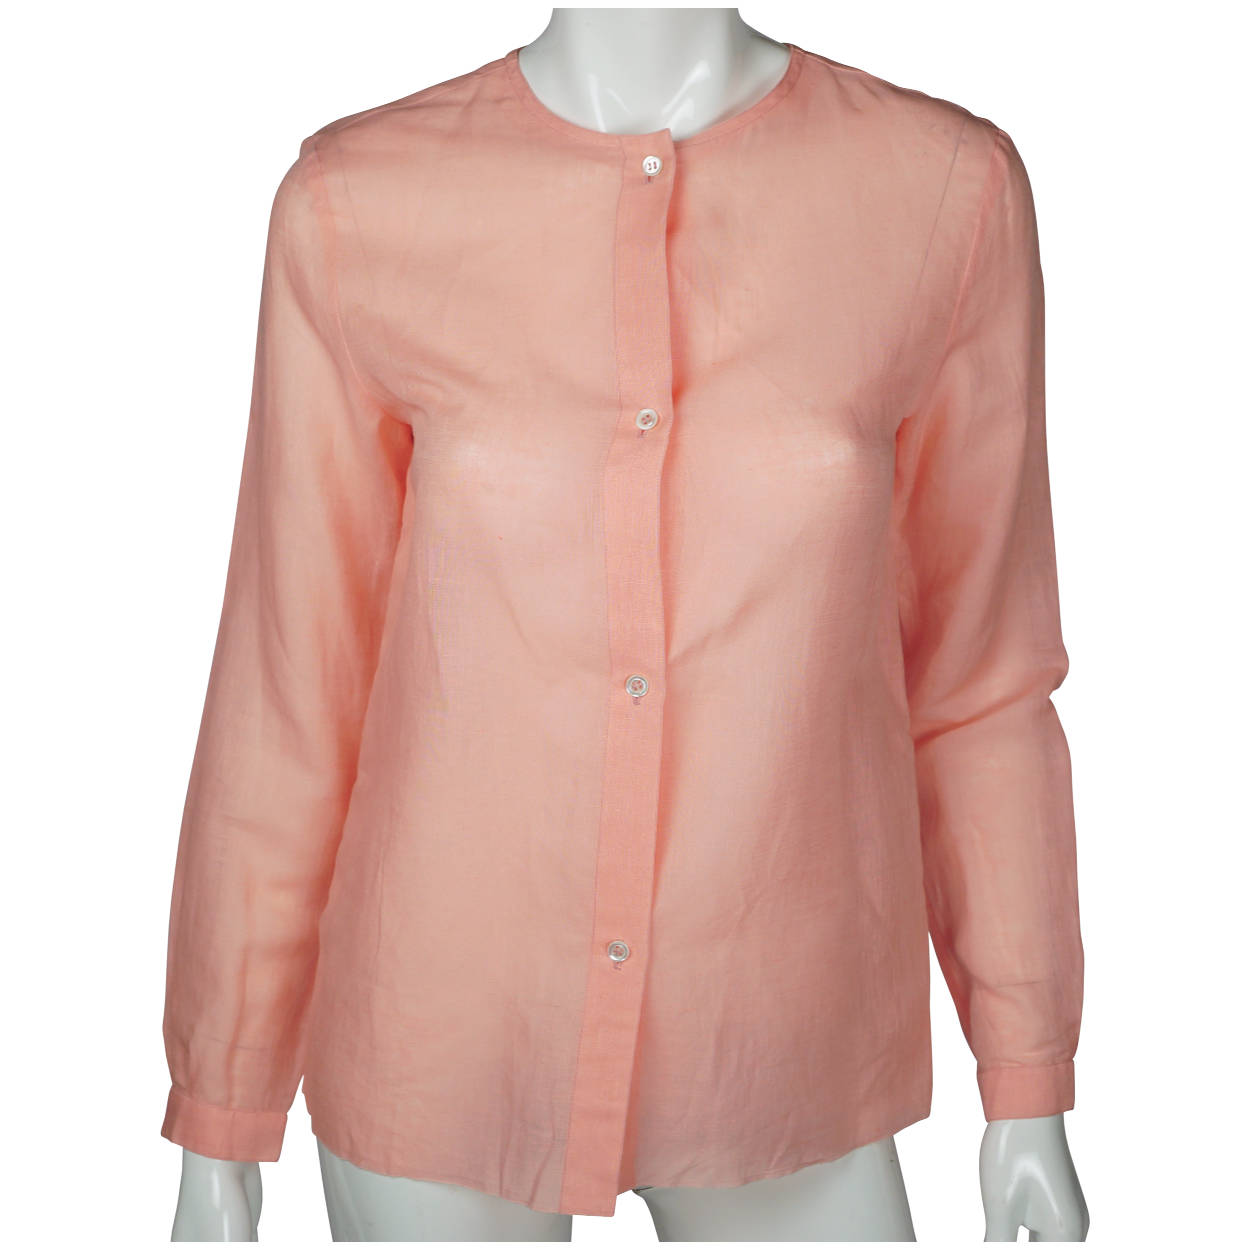 Vintage 1970s Christian Dior Boutique Blouse Pink Cotton Linen NWOT Size M